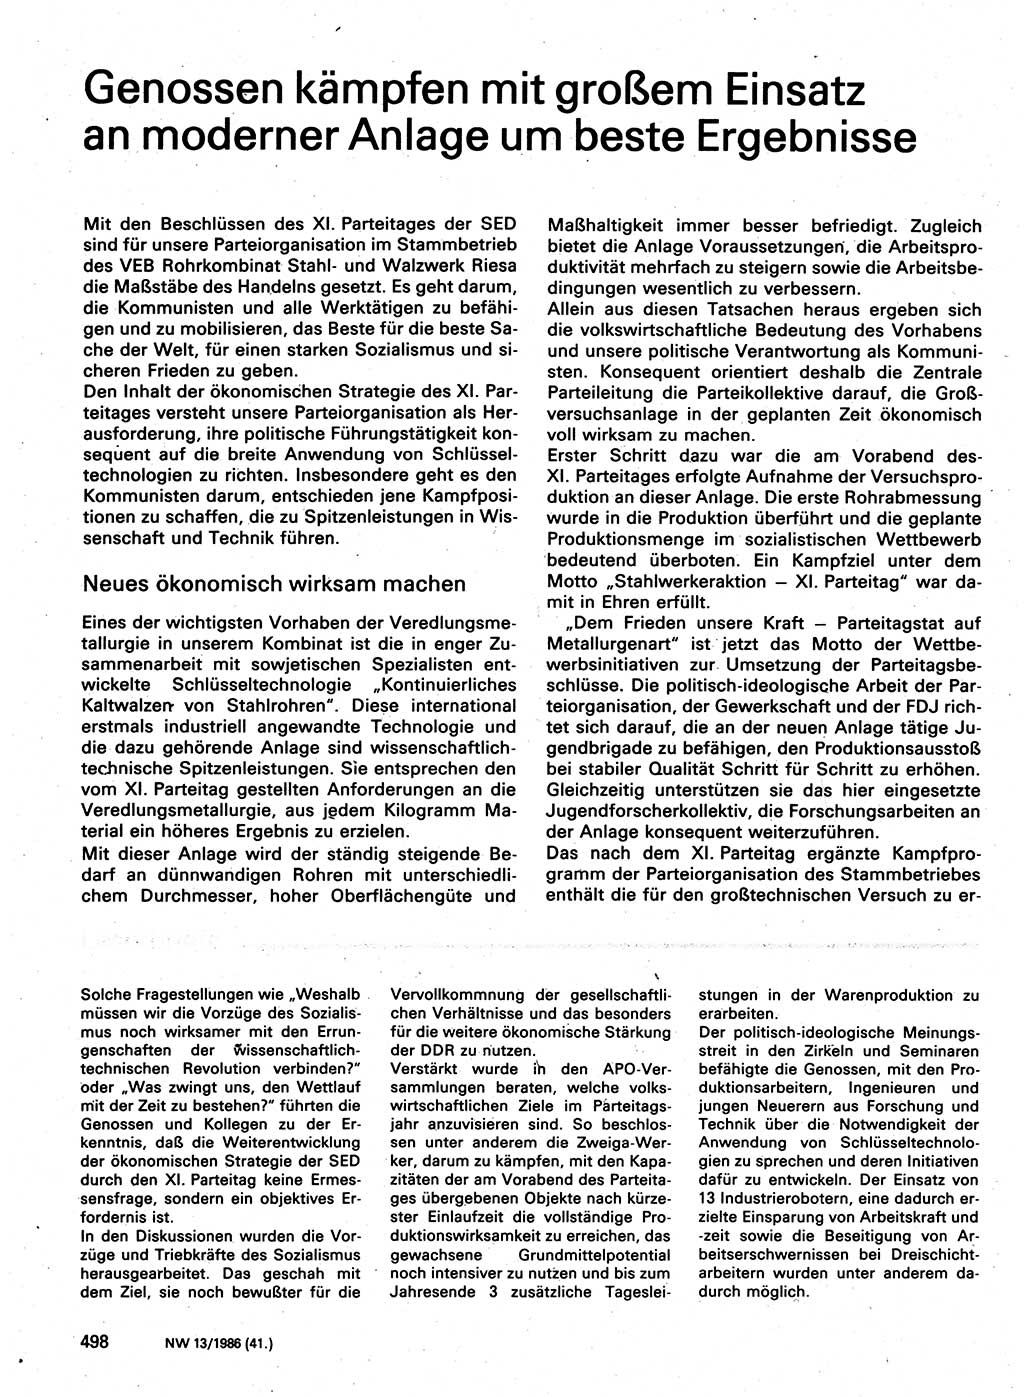 Neuer Weg (NW), Organ des Zentralkomitees (ZK) der SED (Sozialistische Einheitspartei Deutschlands) für Fragen des Parteilebens, 41. Jahrgang [Deutsche Demokratische Republik (DDR)] 1986, Seite 498 (NW ZK SED DDR 1986, S. 498)